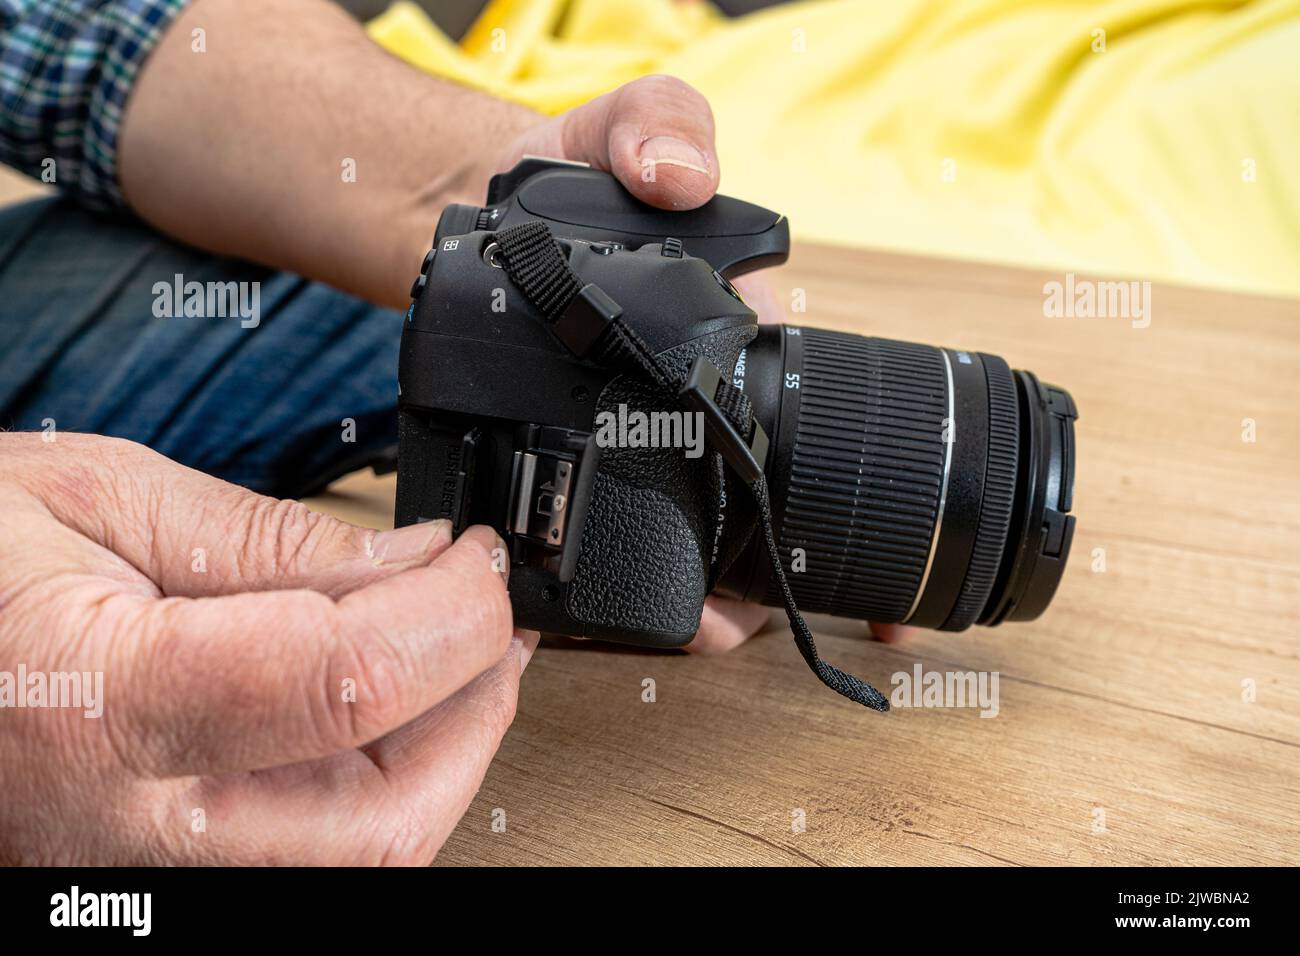 Photographe masculin insérant une carte mémoire flash tout en tenant un appareil photo professionnel. Banque D'Images